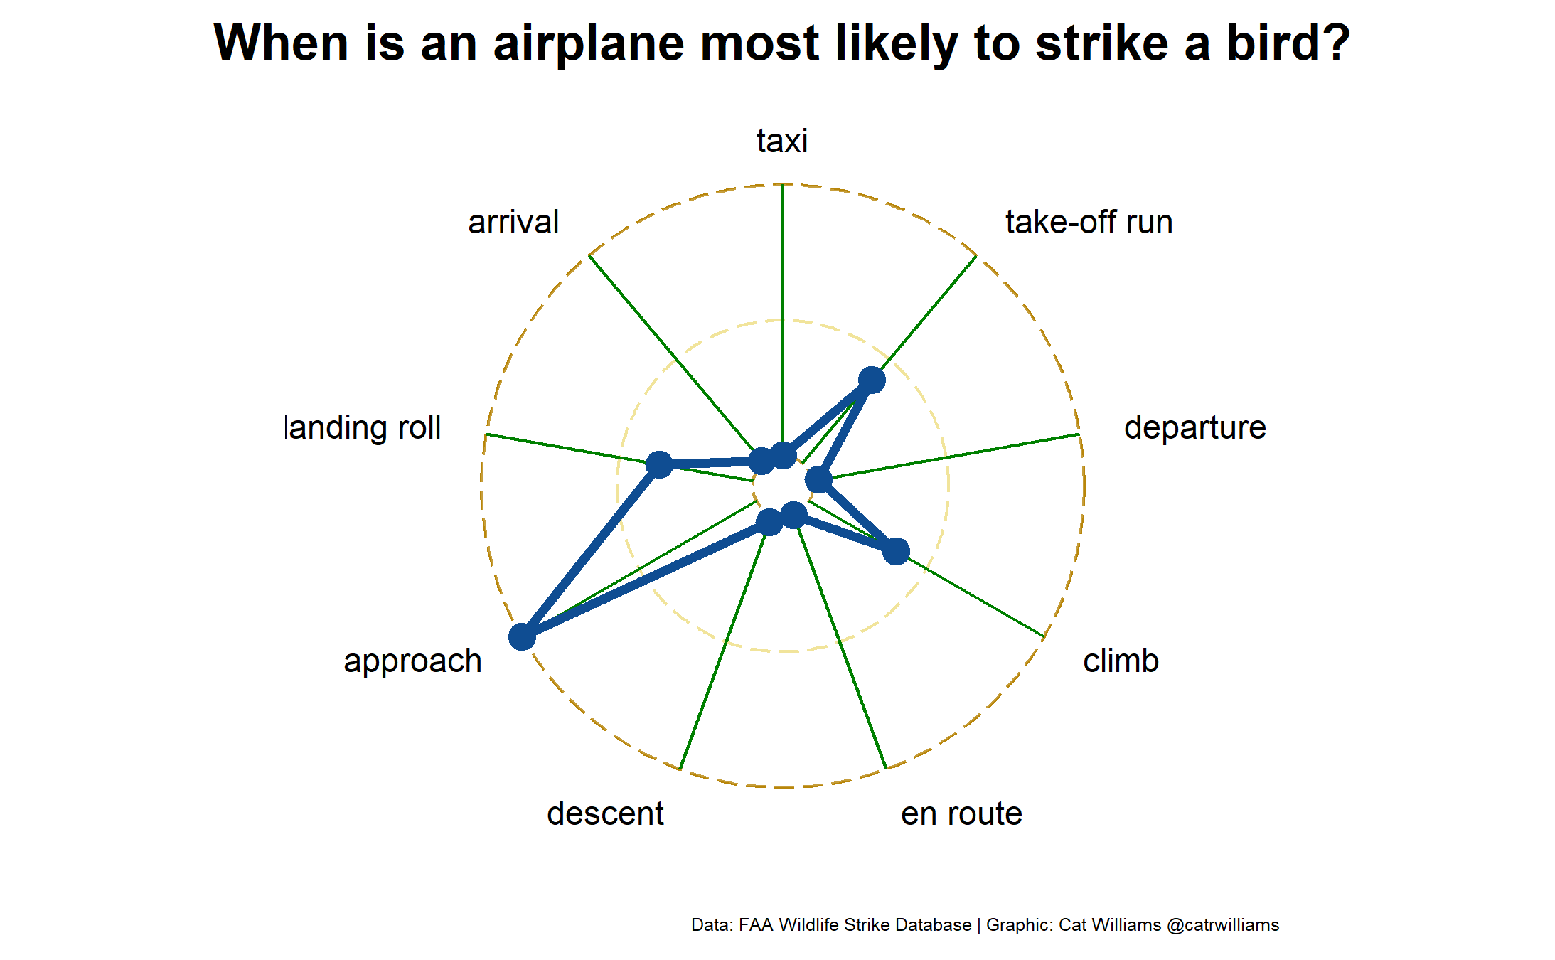 Airplane bird strikes by flight phase